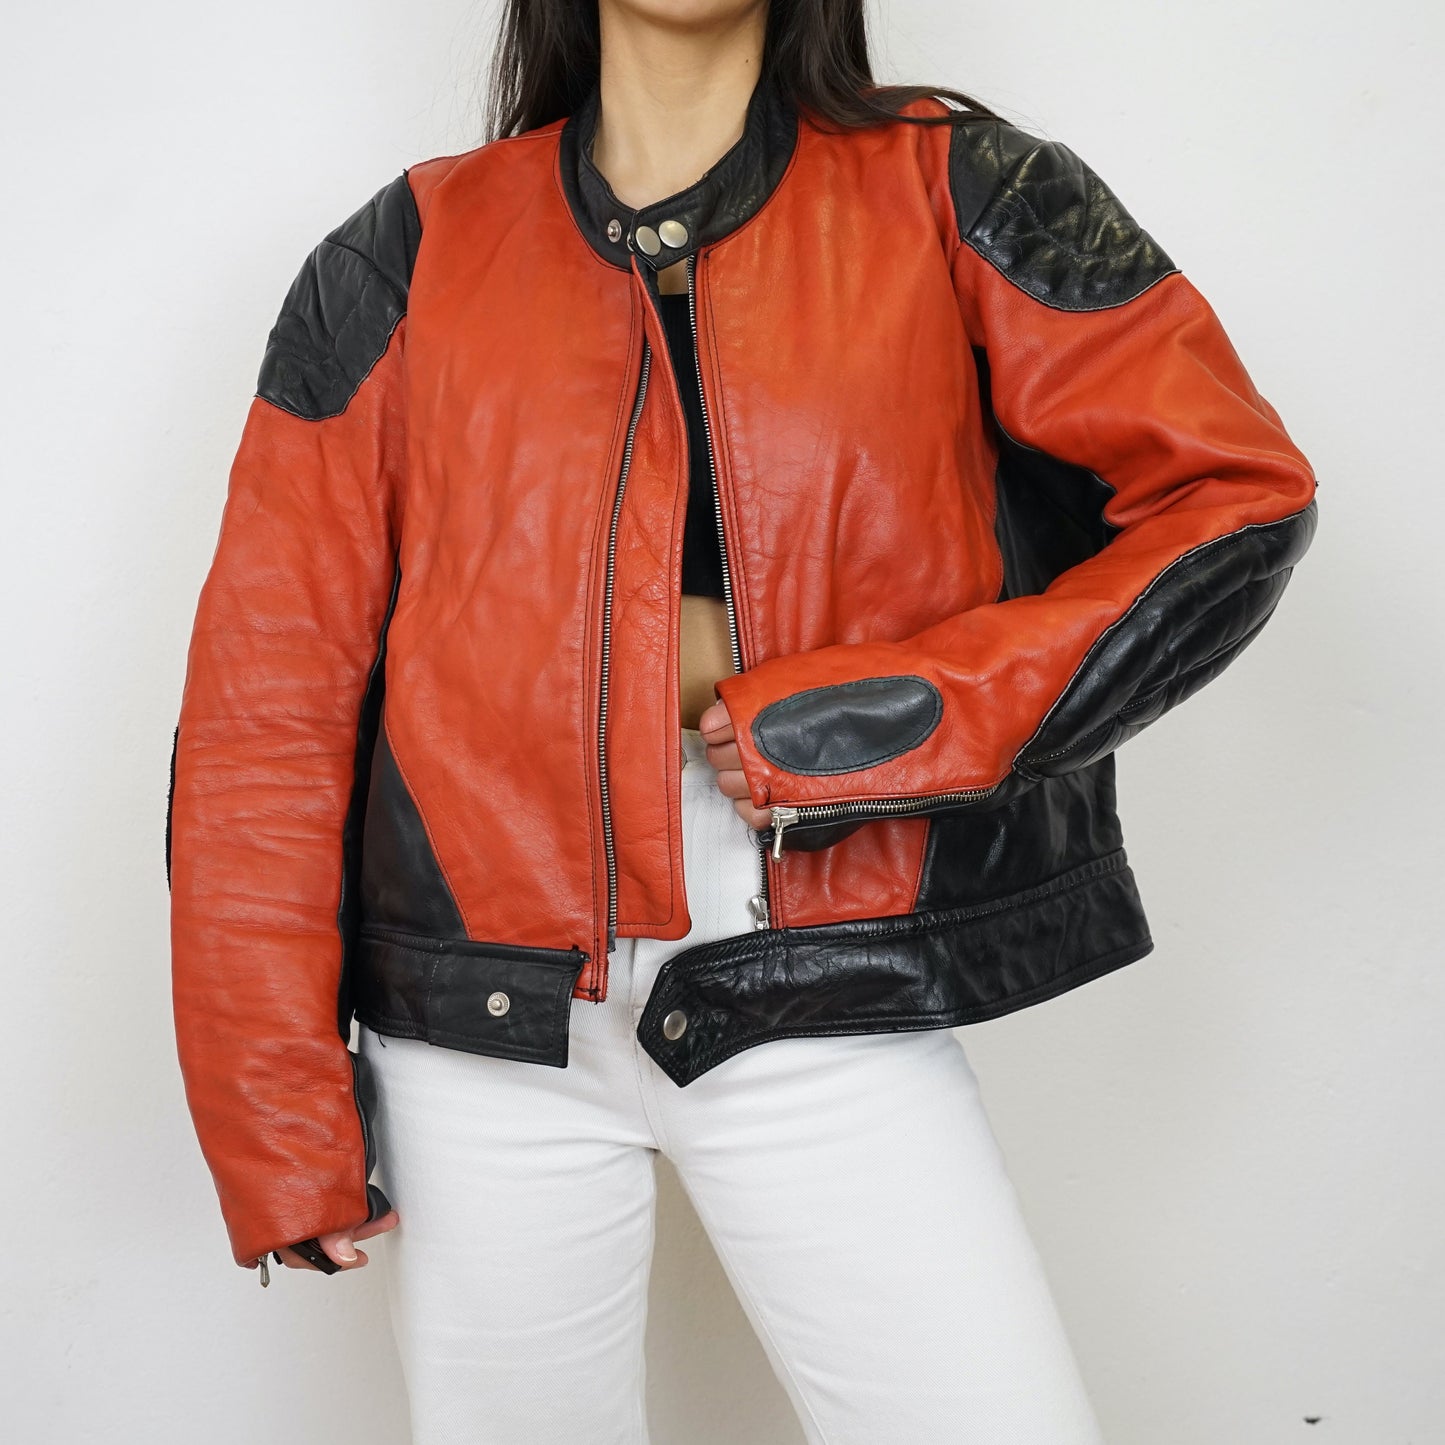 Vintage Biker Racing Leather Jacket Size M-L